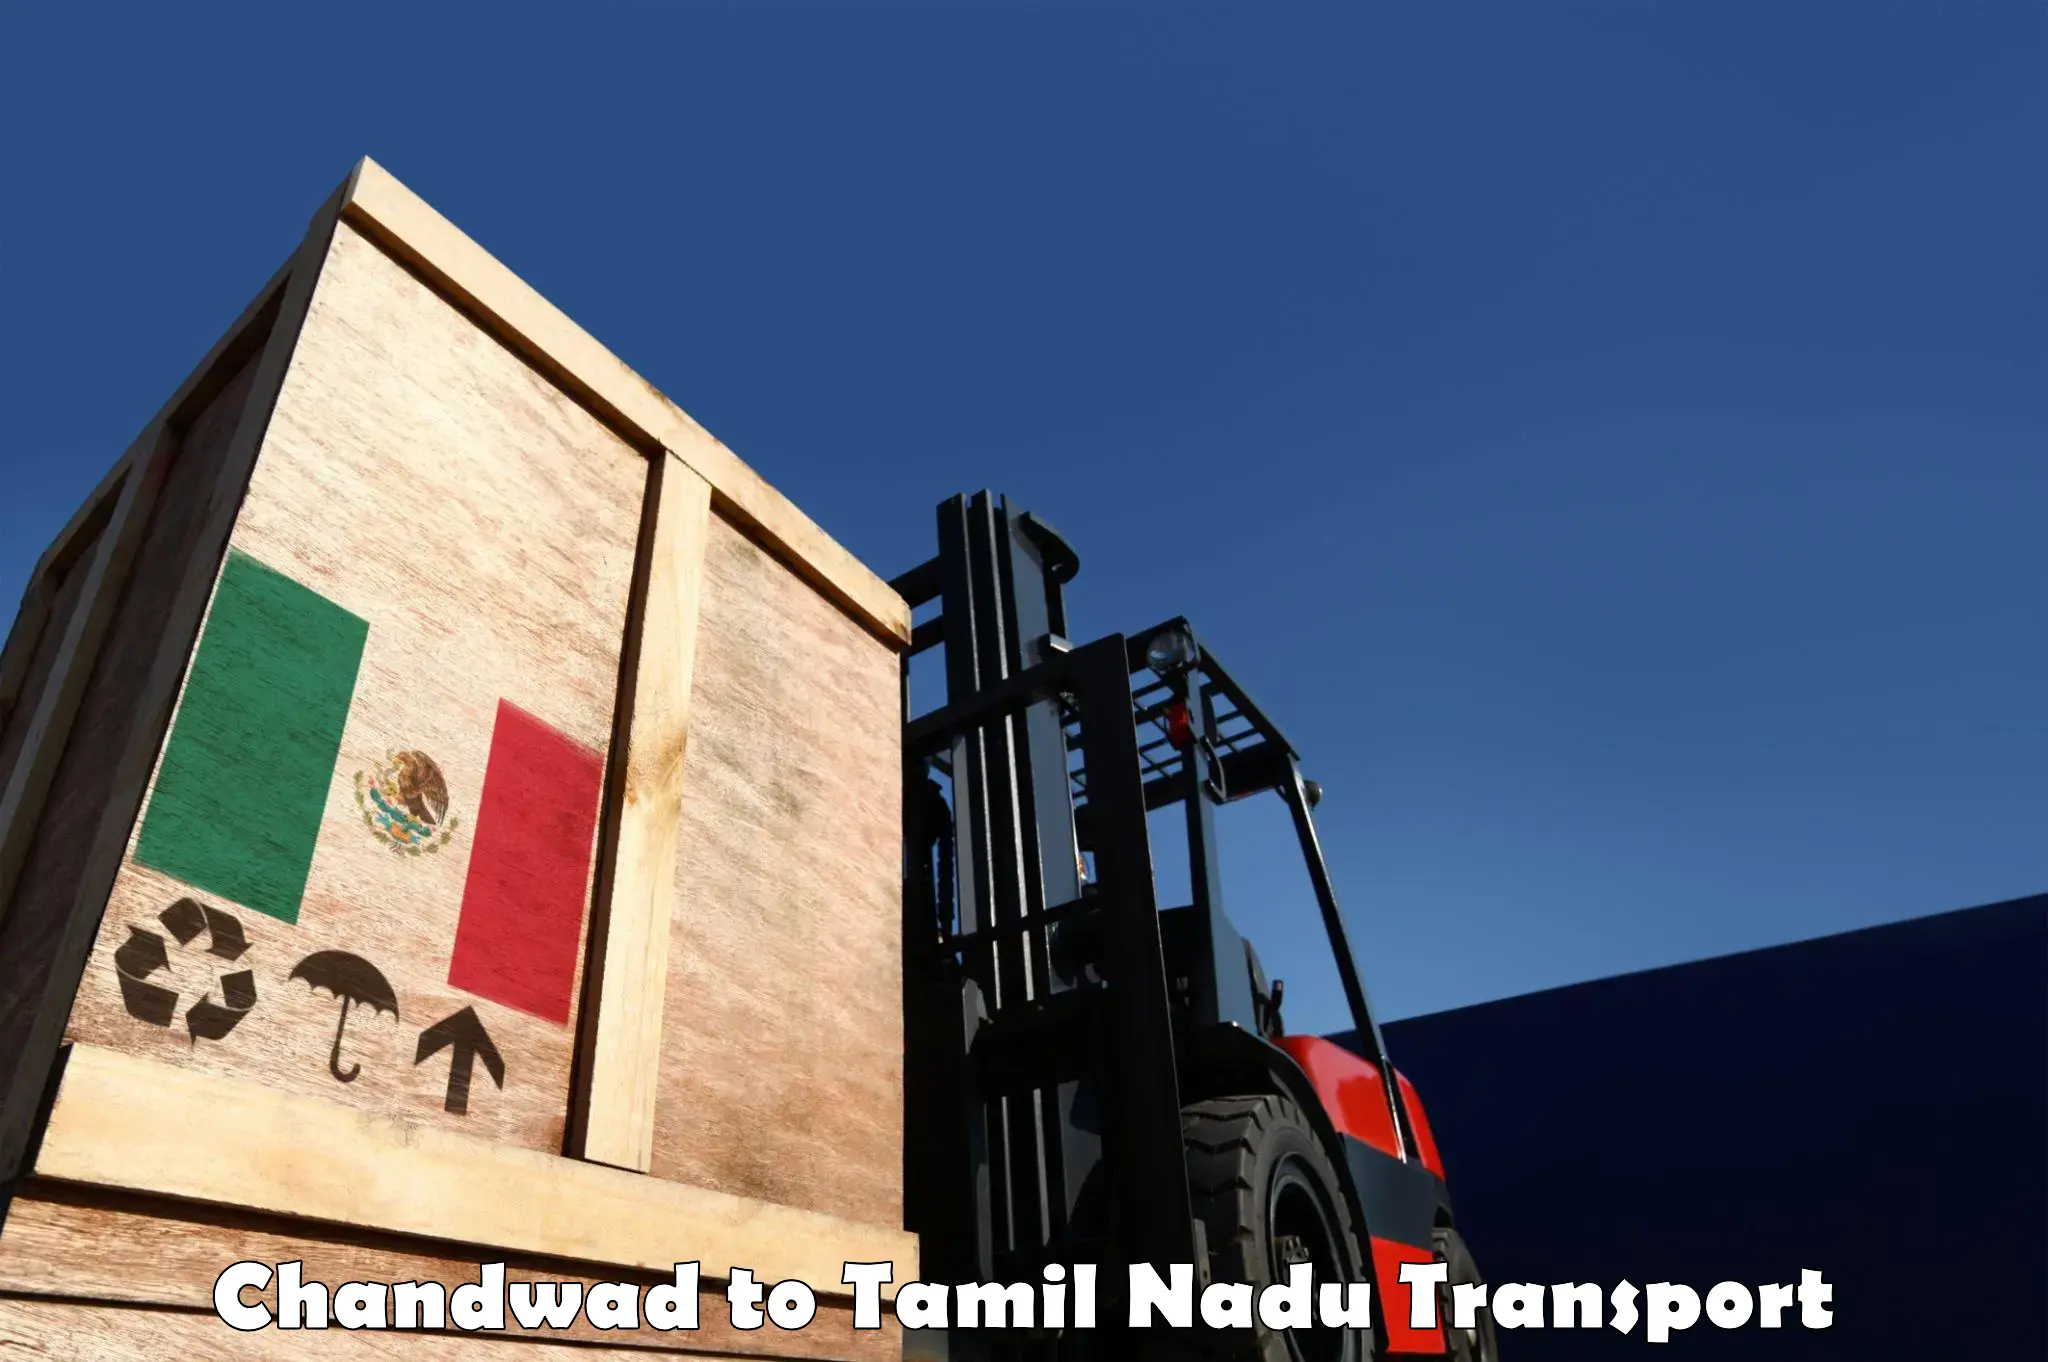 Online transport service Chandwad to NIT Tiruchirapalli